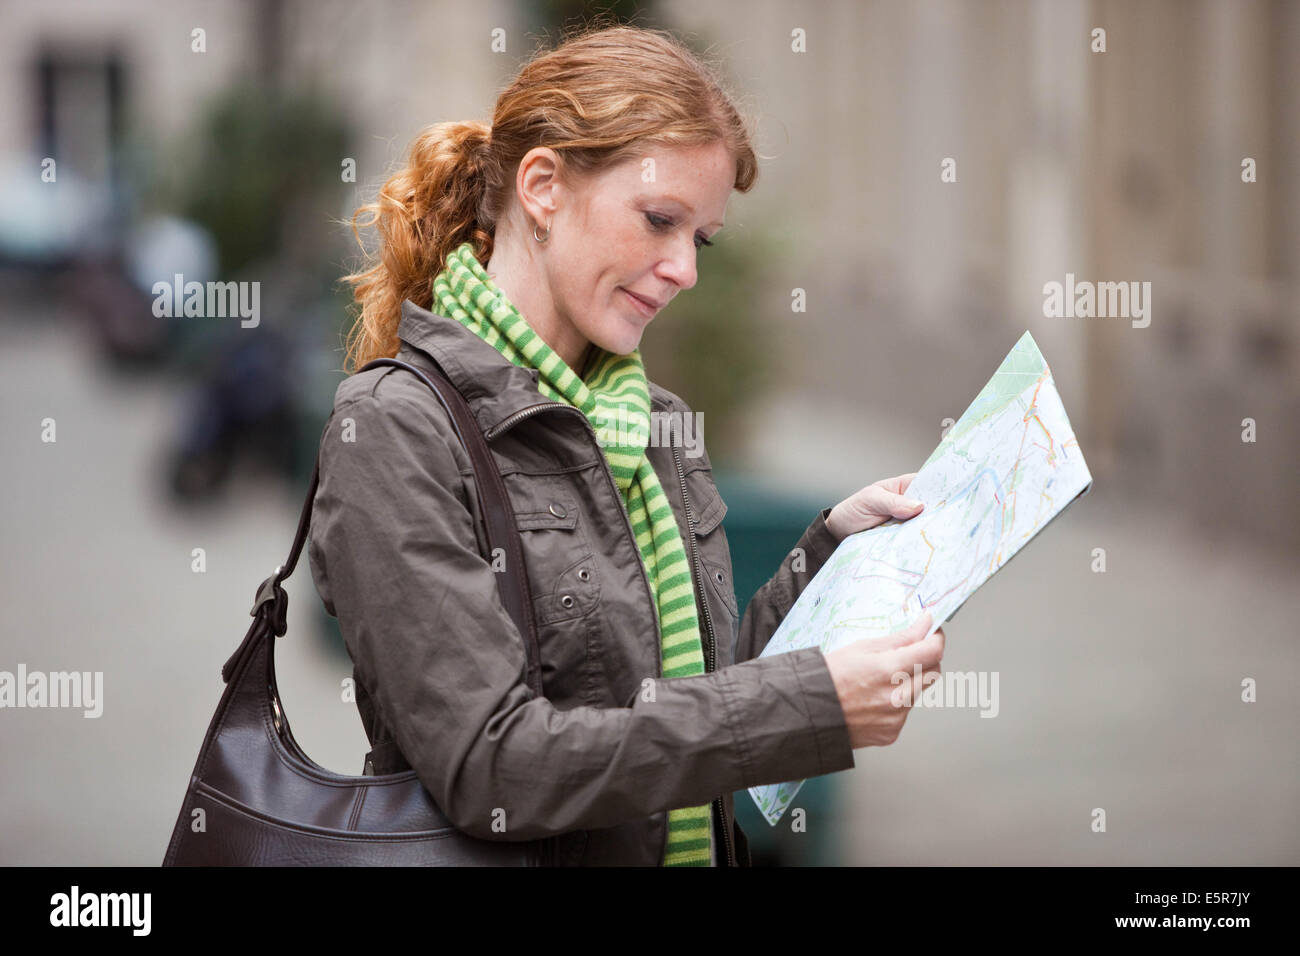 Donna che utilizza mappa della città. Foto Stock